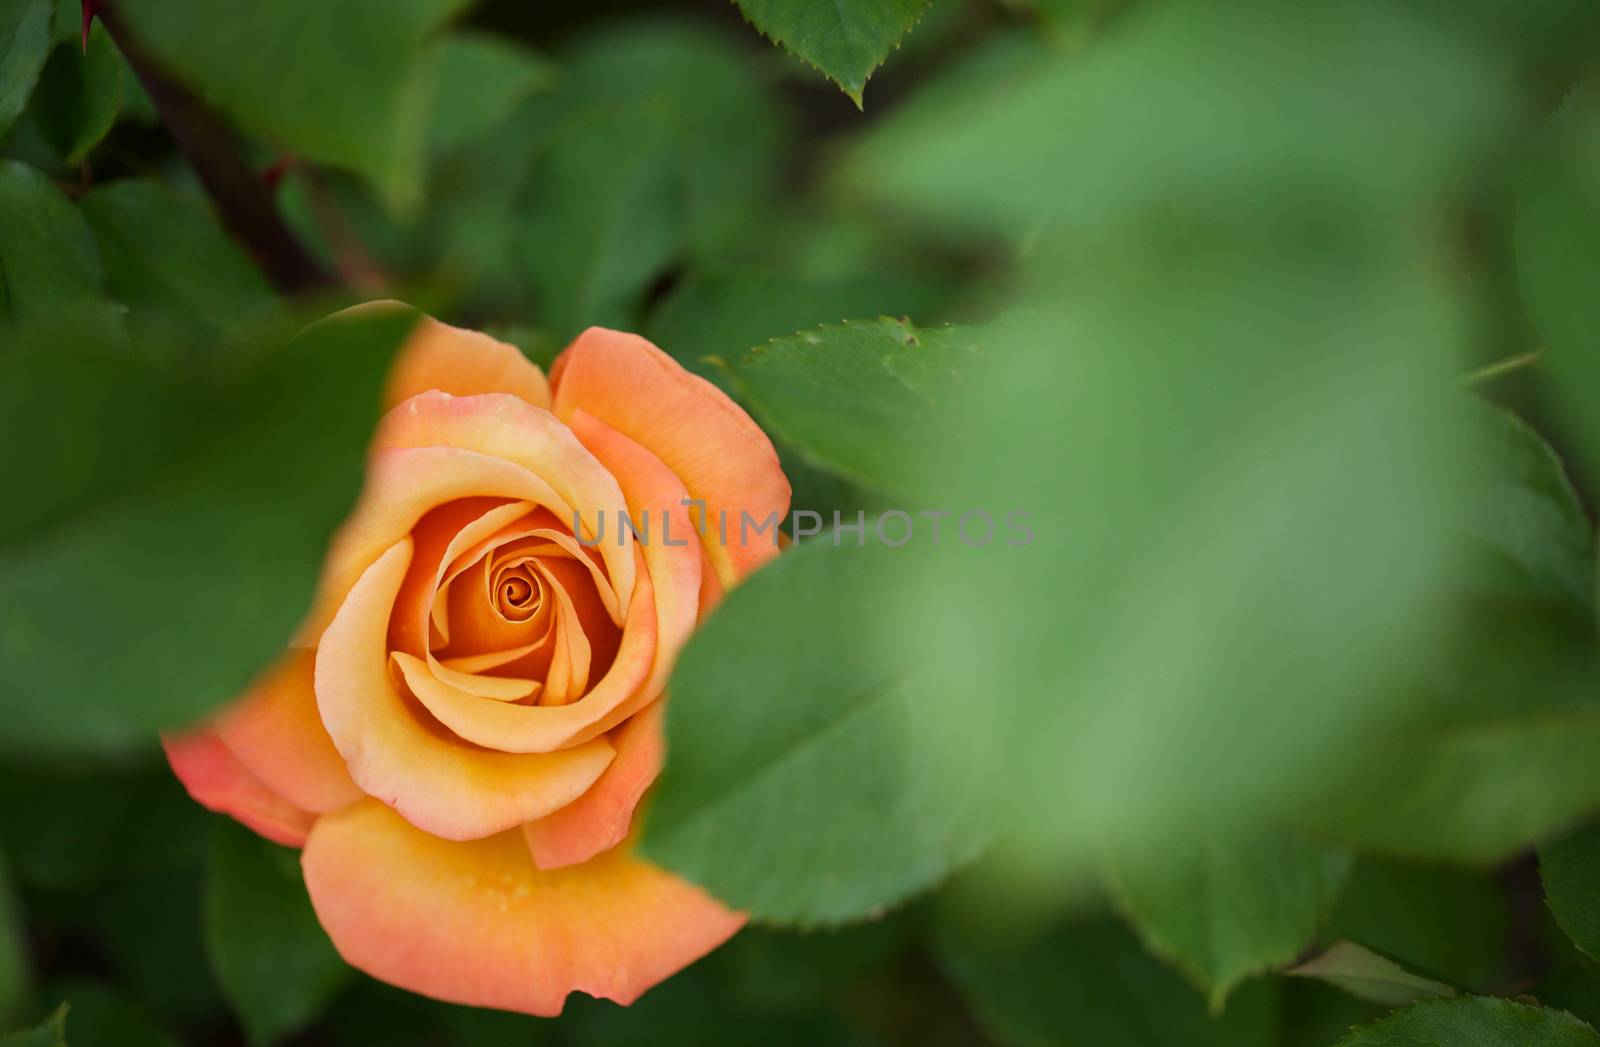 Hidden Orange rose by bobkeenan